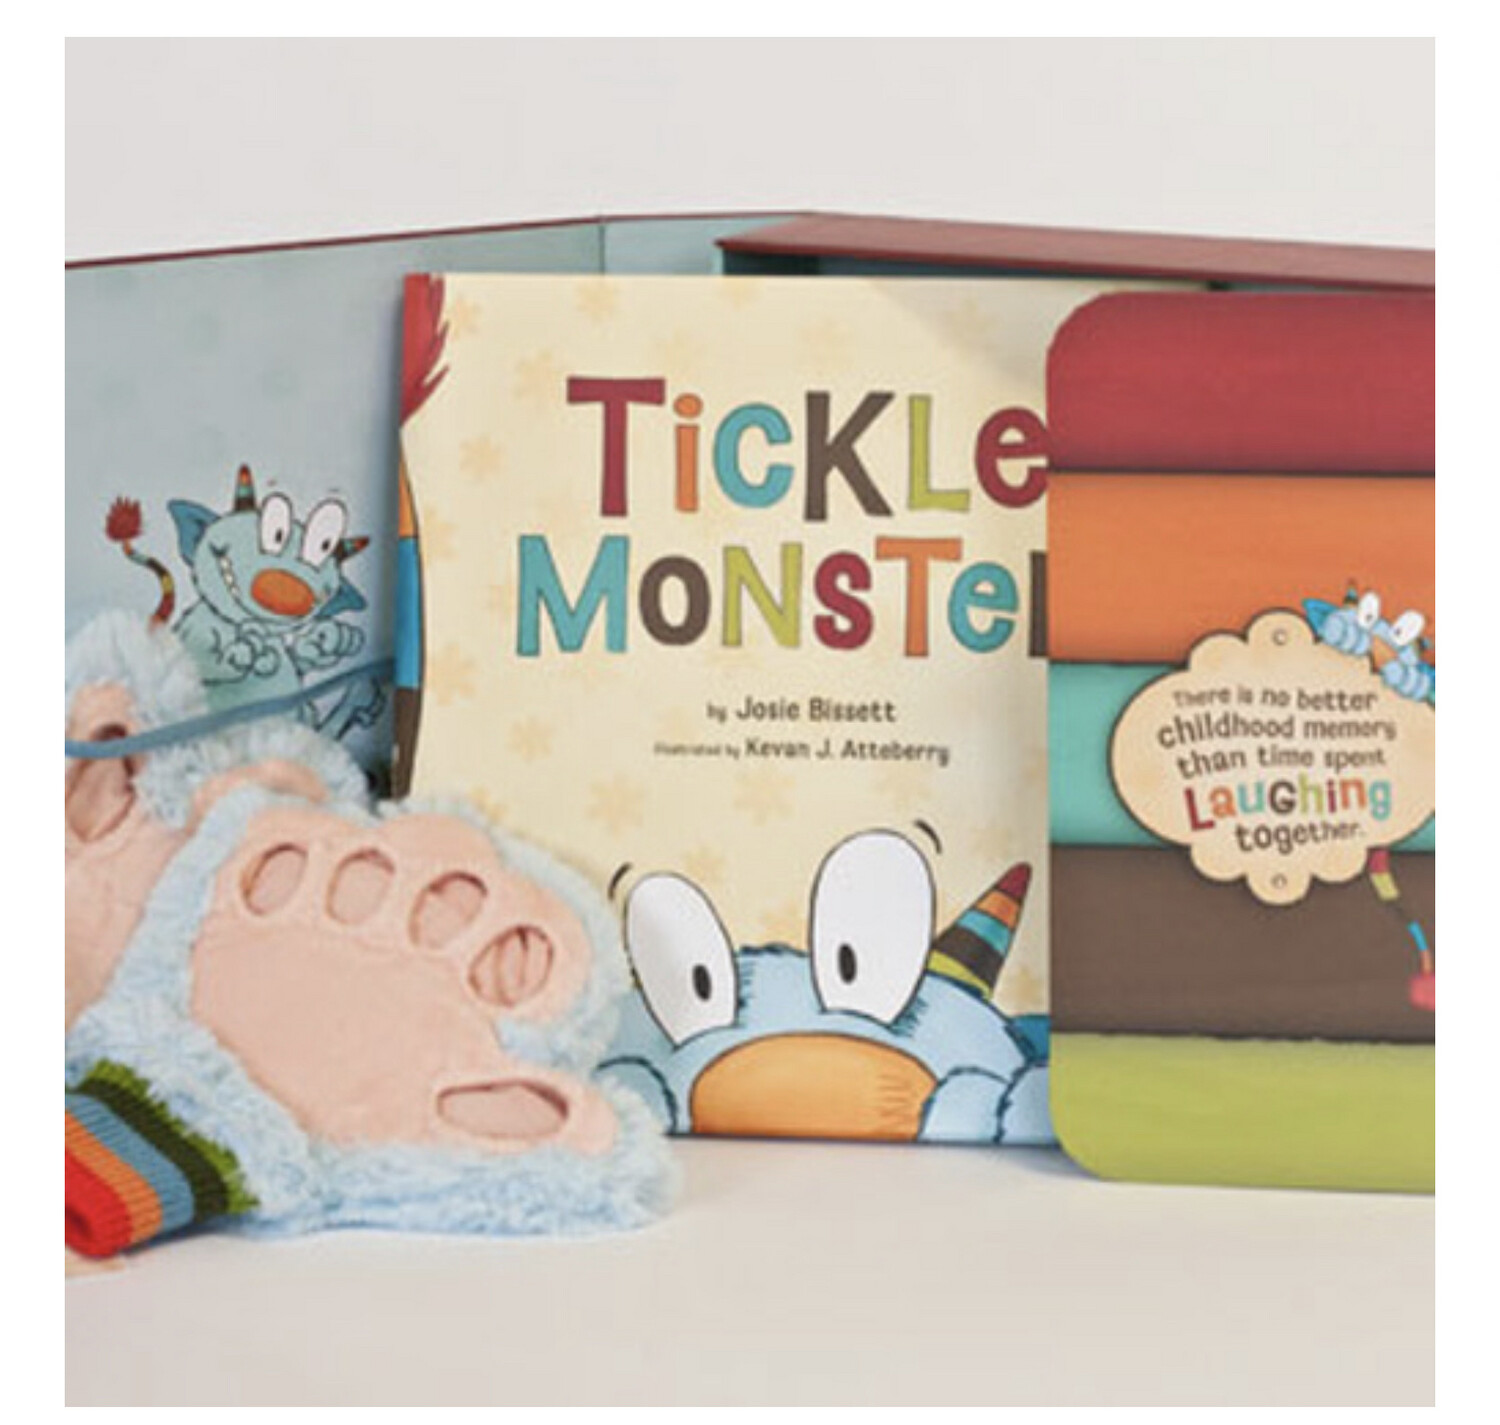 Tickle Monster Kit